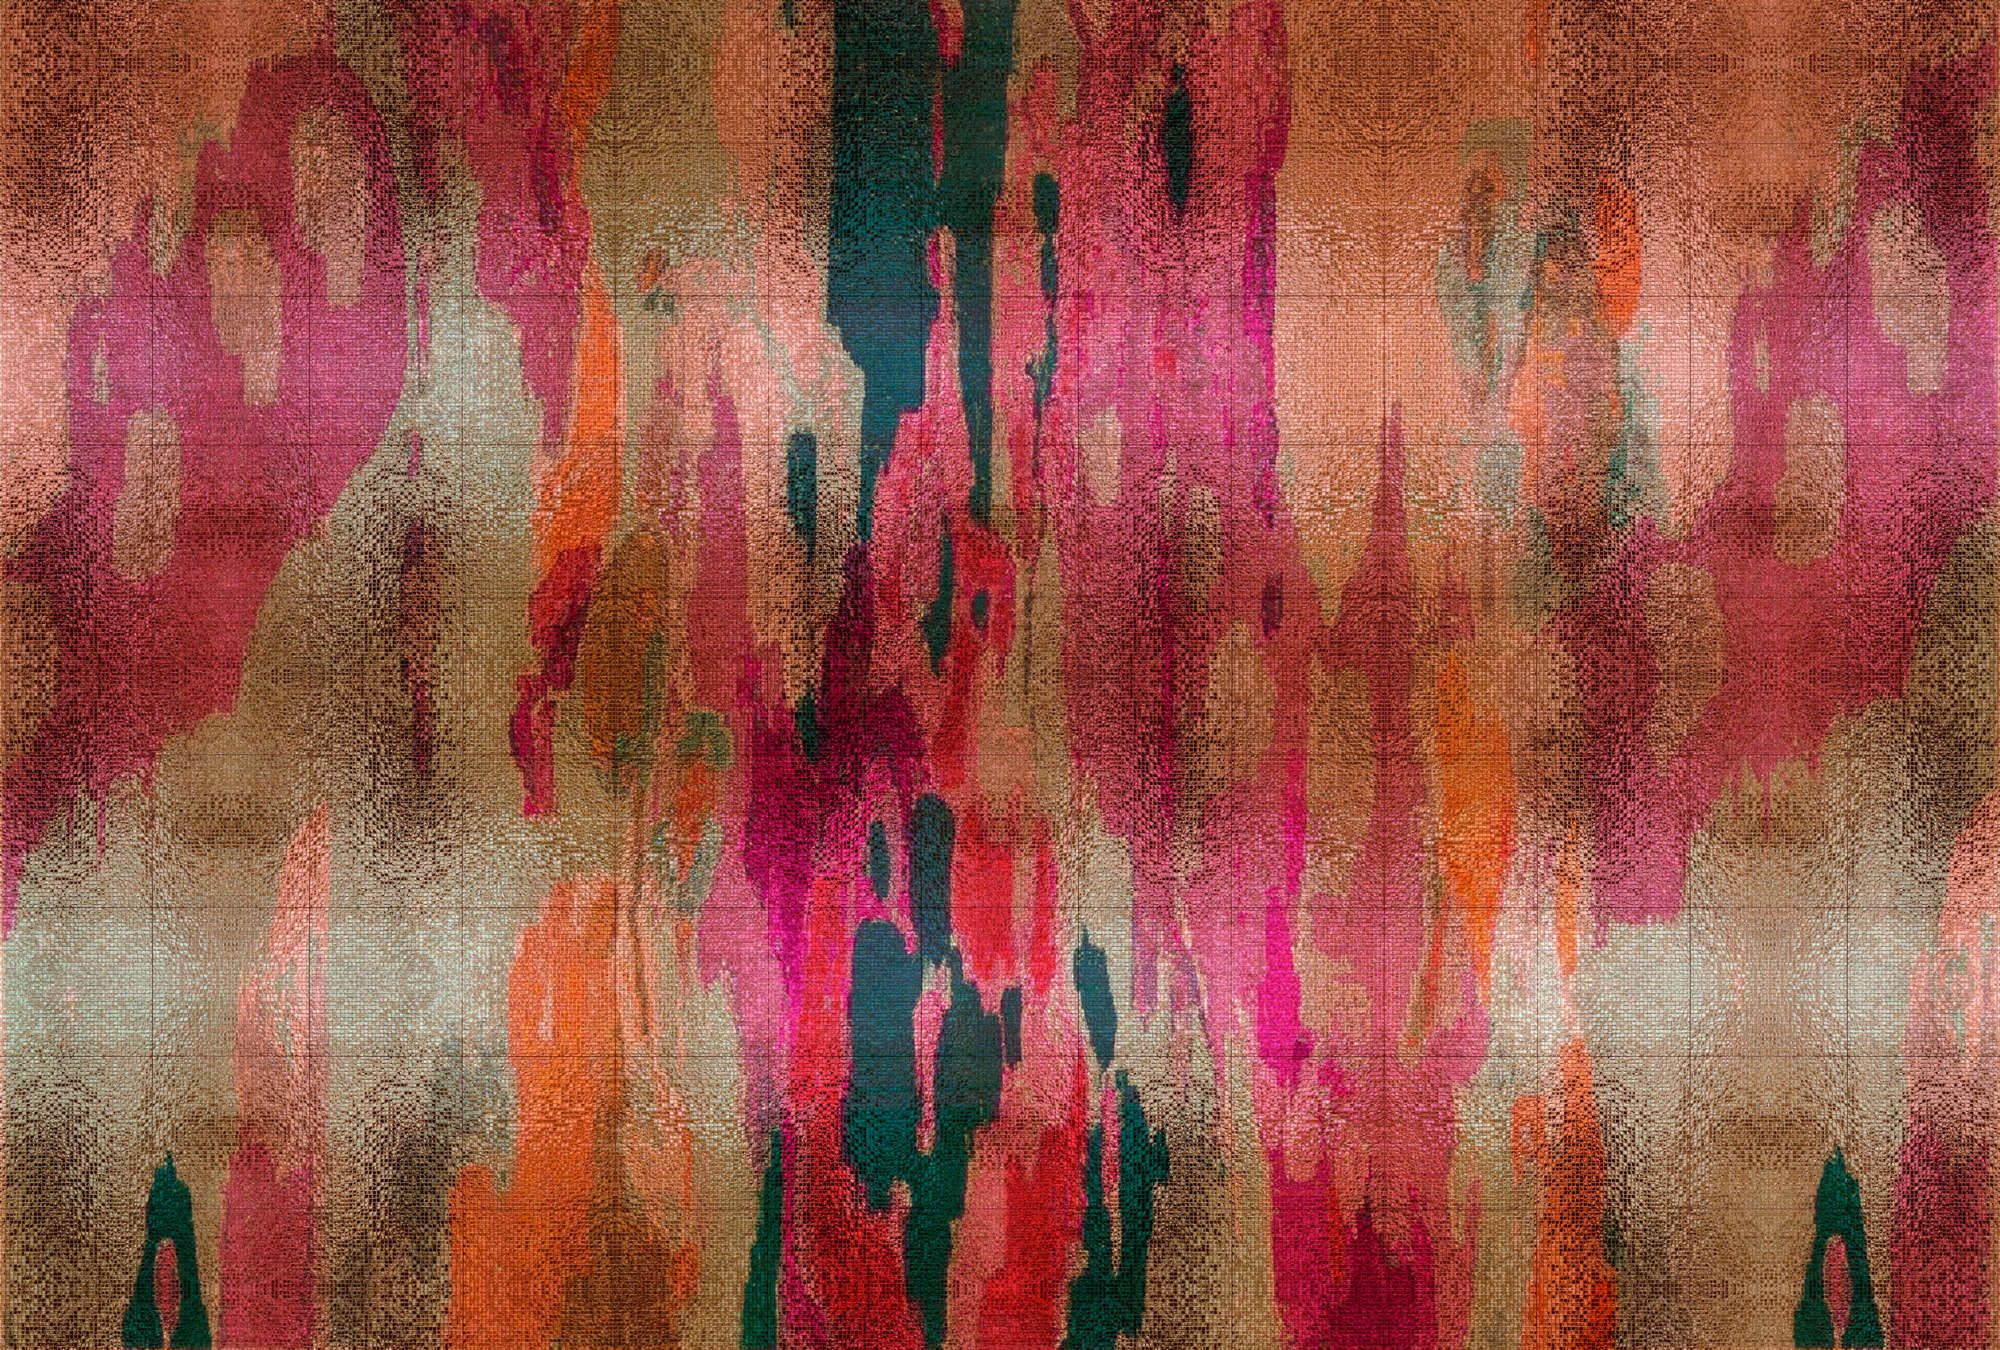             Fotomural »marielle 2« - Degradados de color violeta, naranja, petróleo con estructura de mosaico - Tela no tejida lisa, ligeramente nacarada y brillante
        